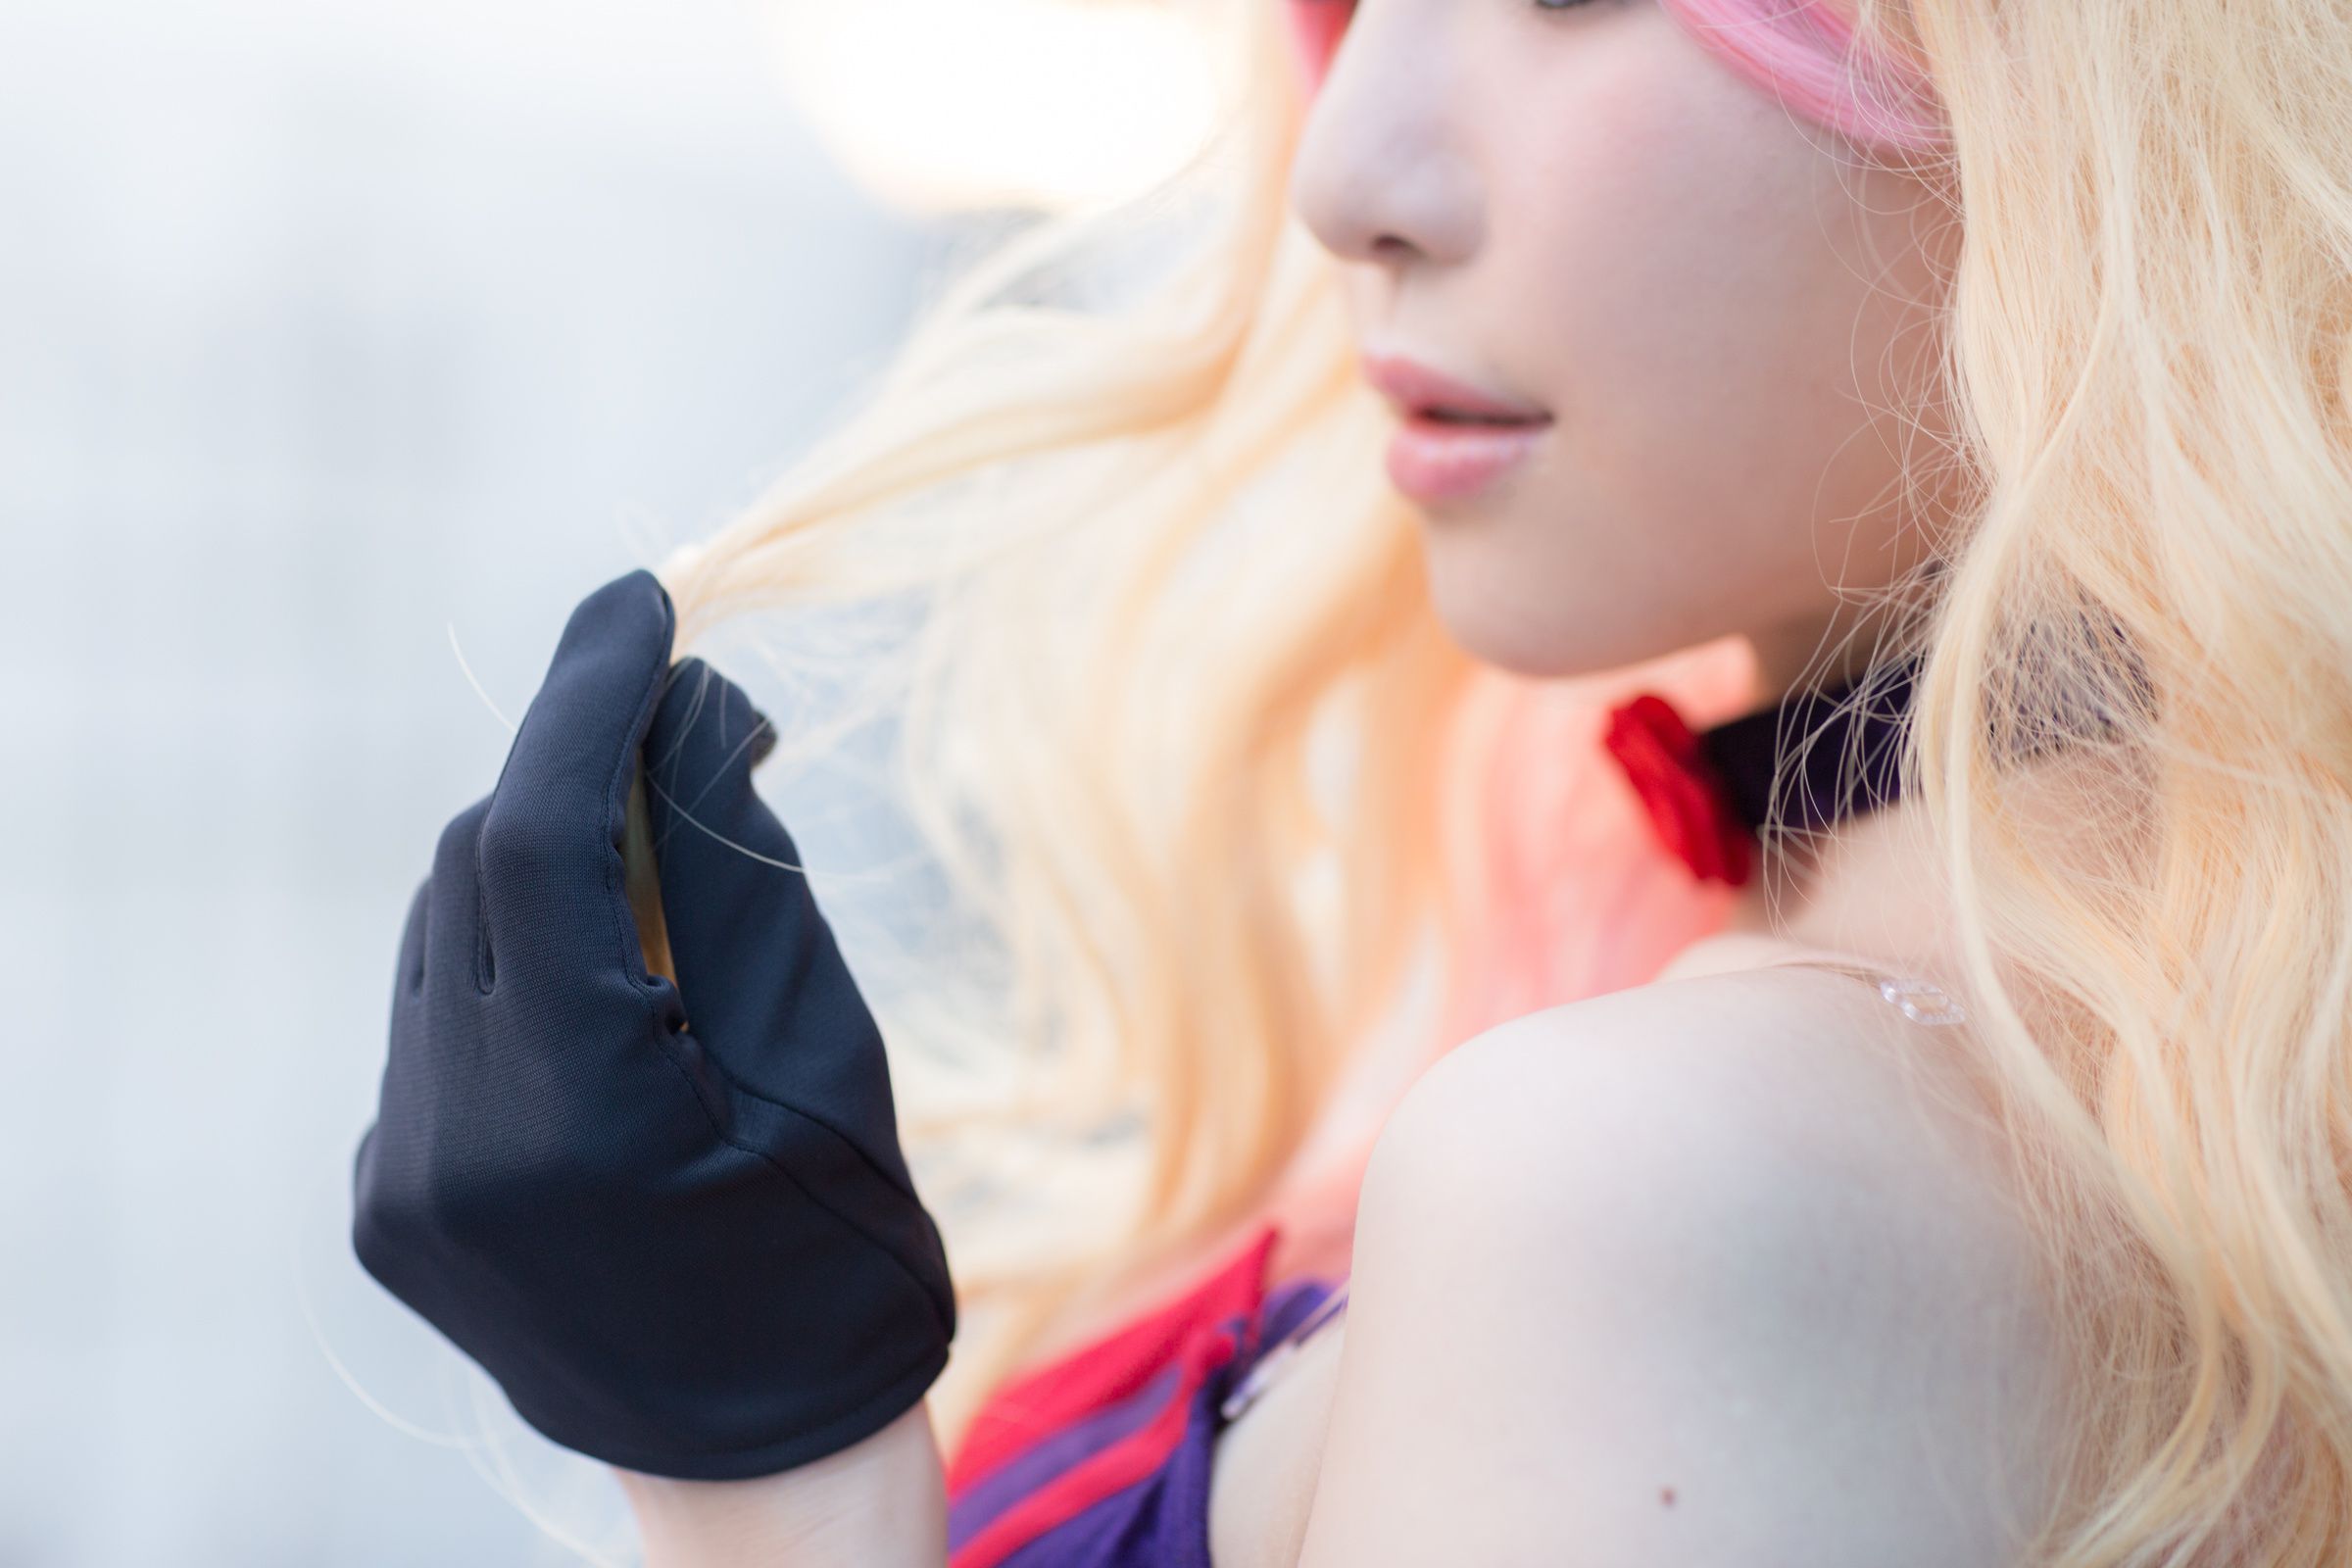 People 2400x1600 Aoi (葵) Sheryl Nome Macross Frontier Macross cosplay model blonde Asian women gloves